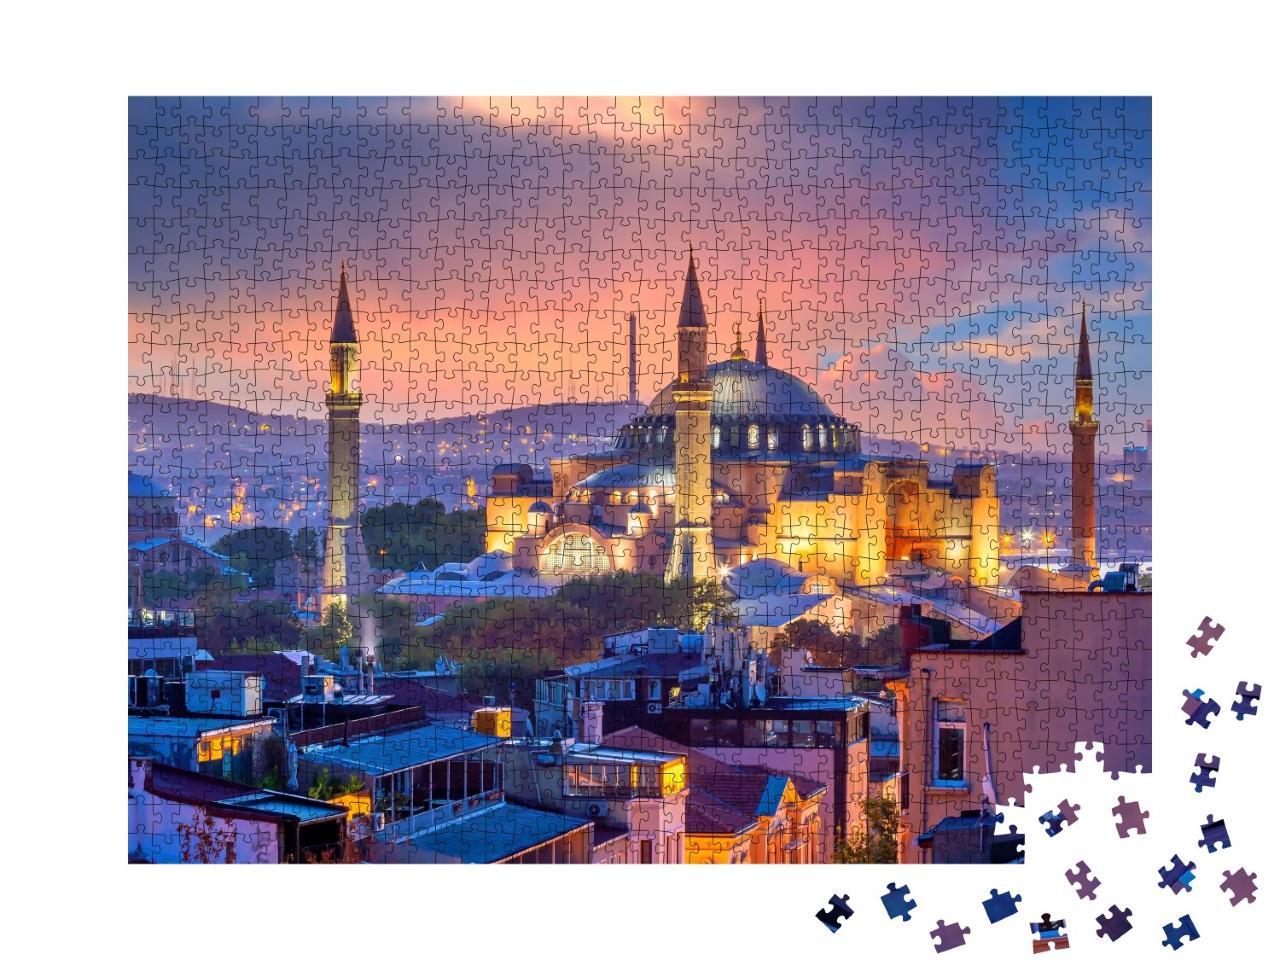 Puzzle de 1000 pièces « Coucher de soleil enchanteur : belle vue sur Sainte-Sophie à Istanbul, Turquie »